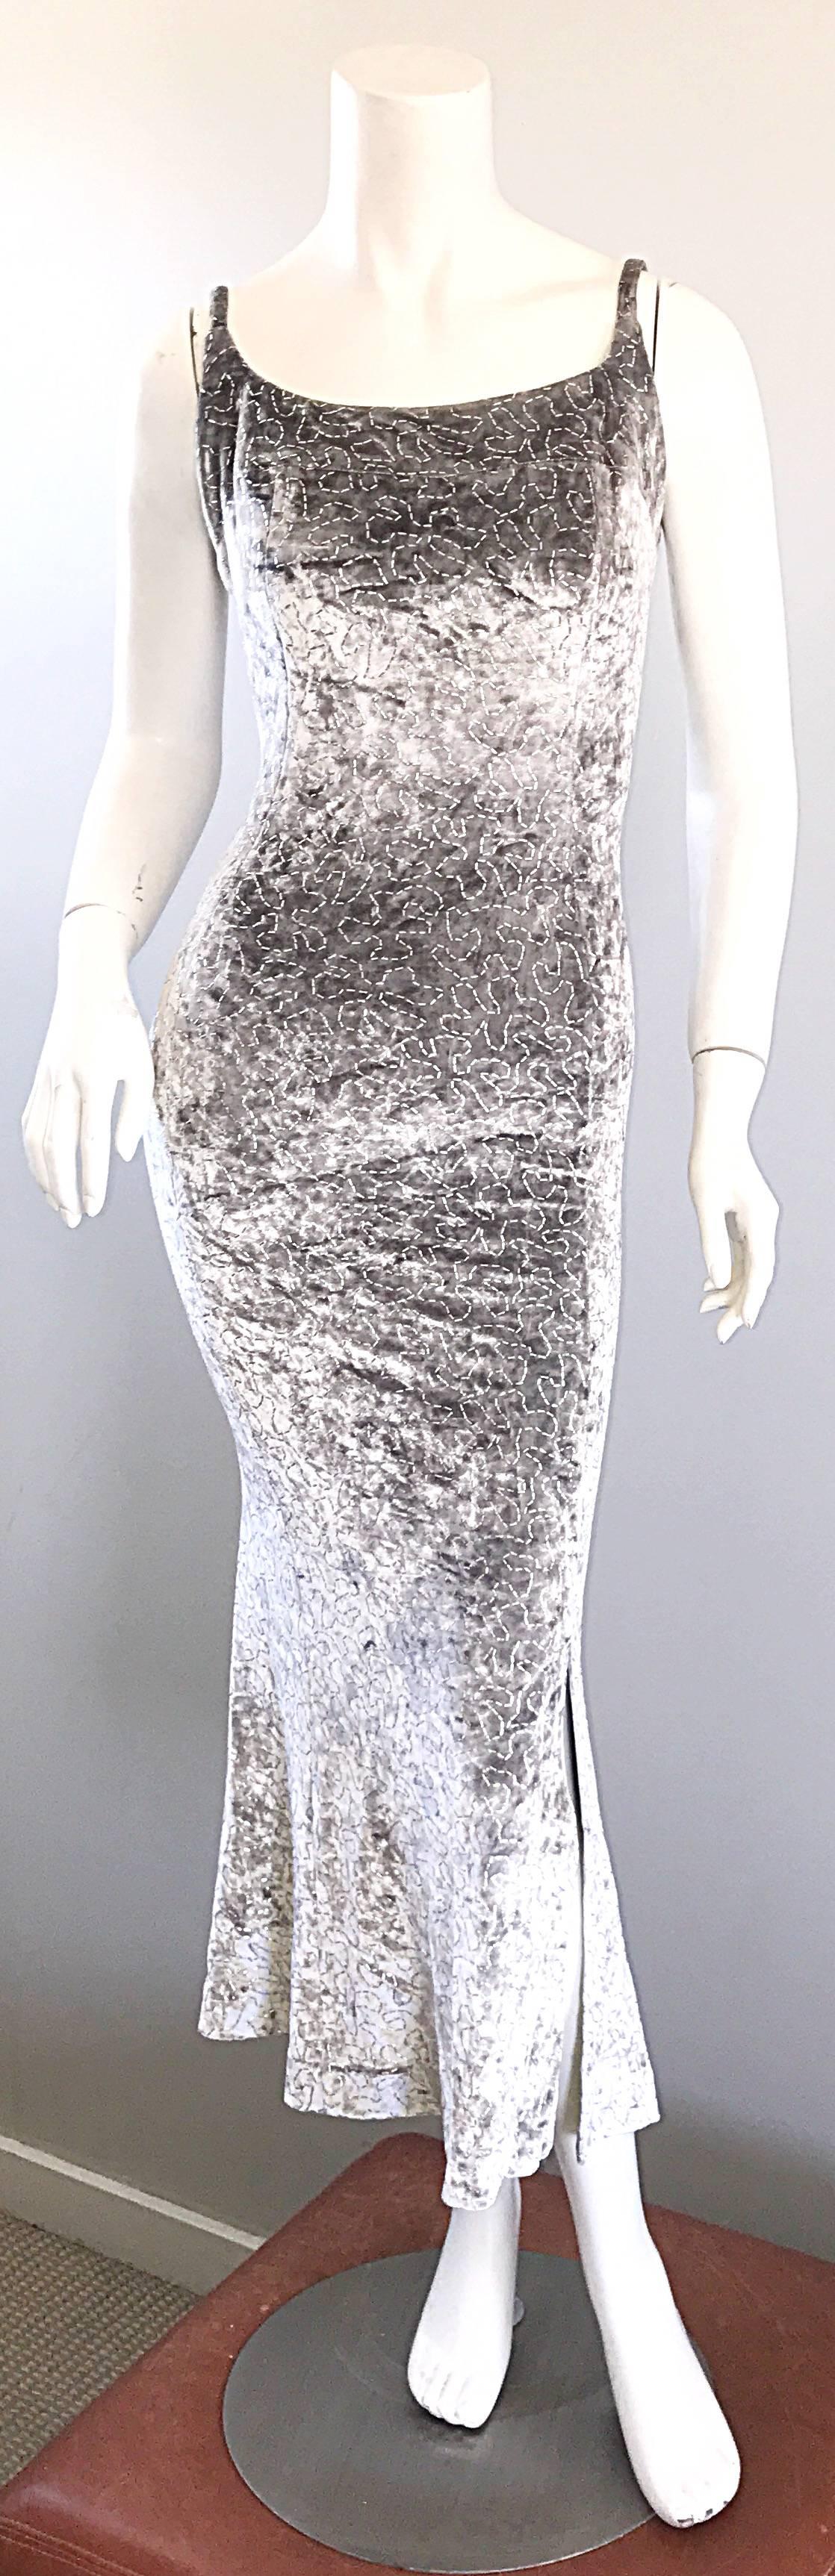 1990s Janine of London Lillie Rubin Silver Grey Metallic Crushed Velvet Dress  For Sale 1